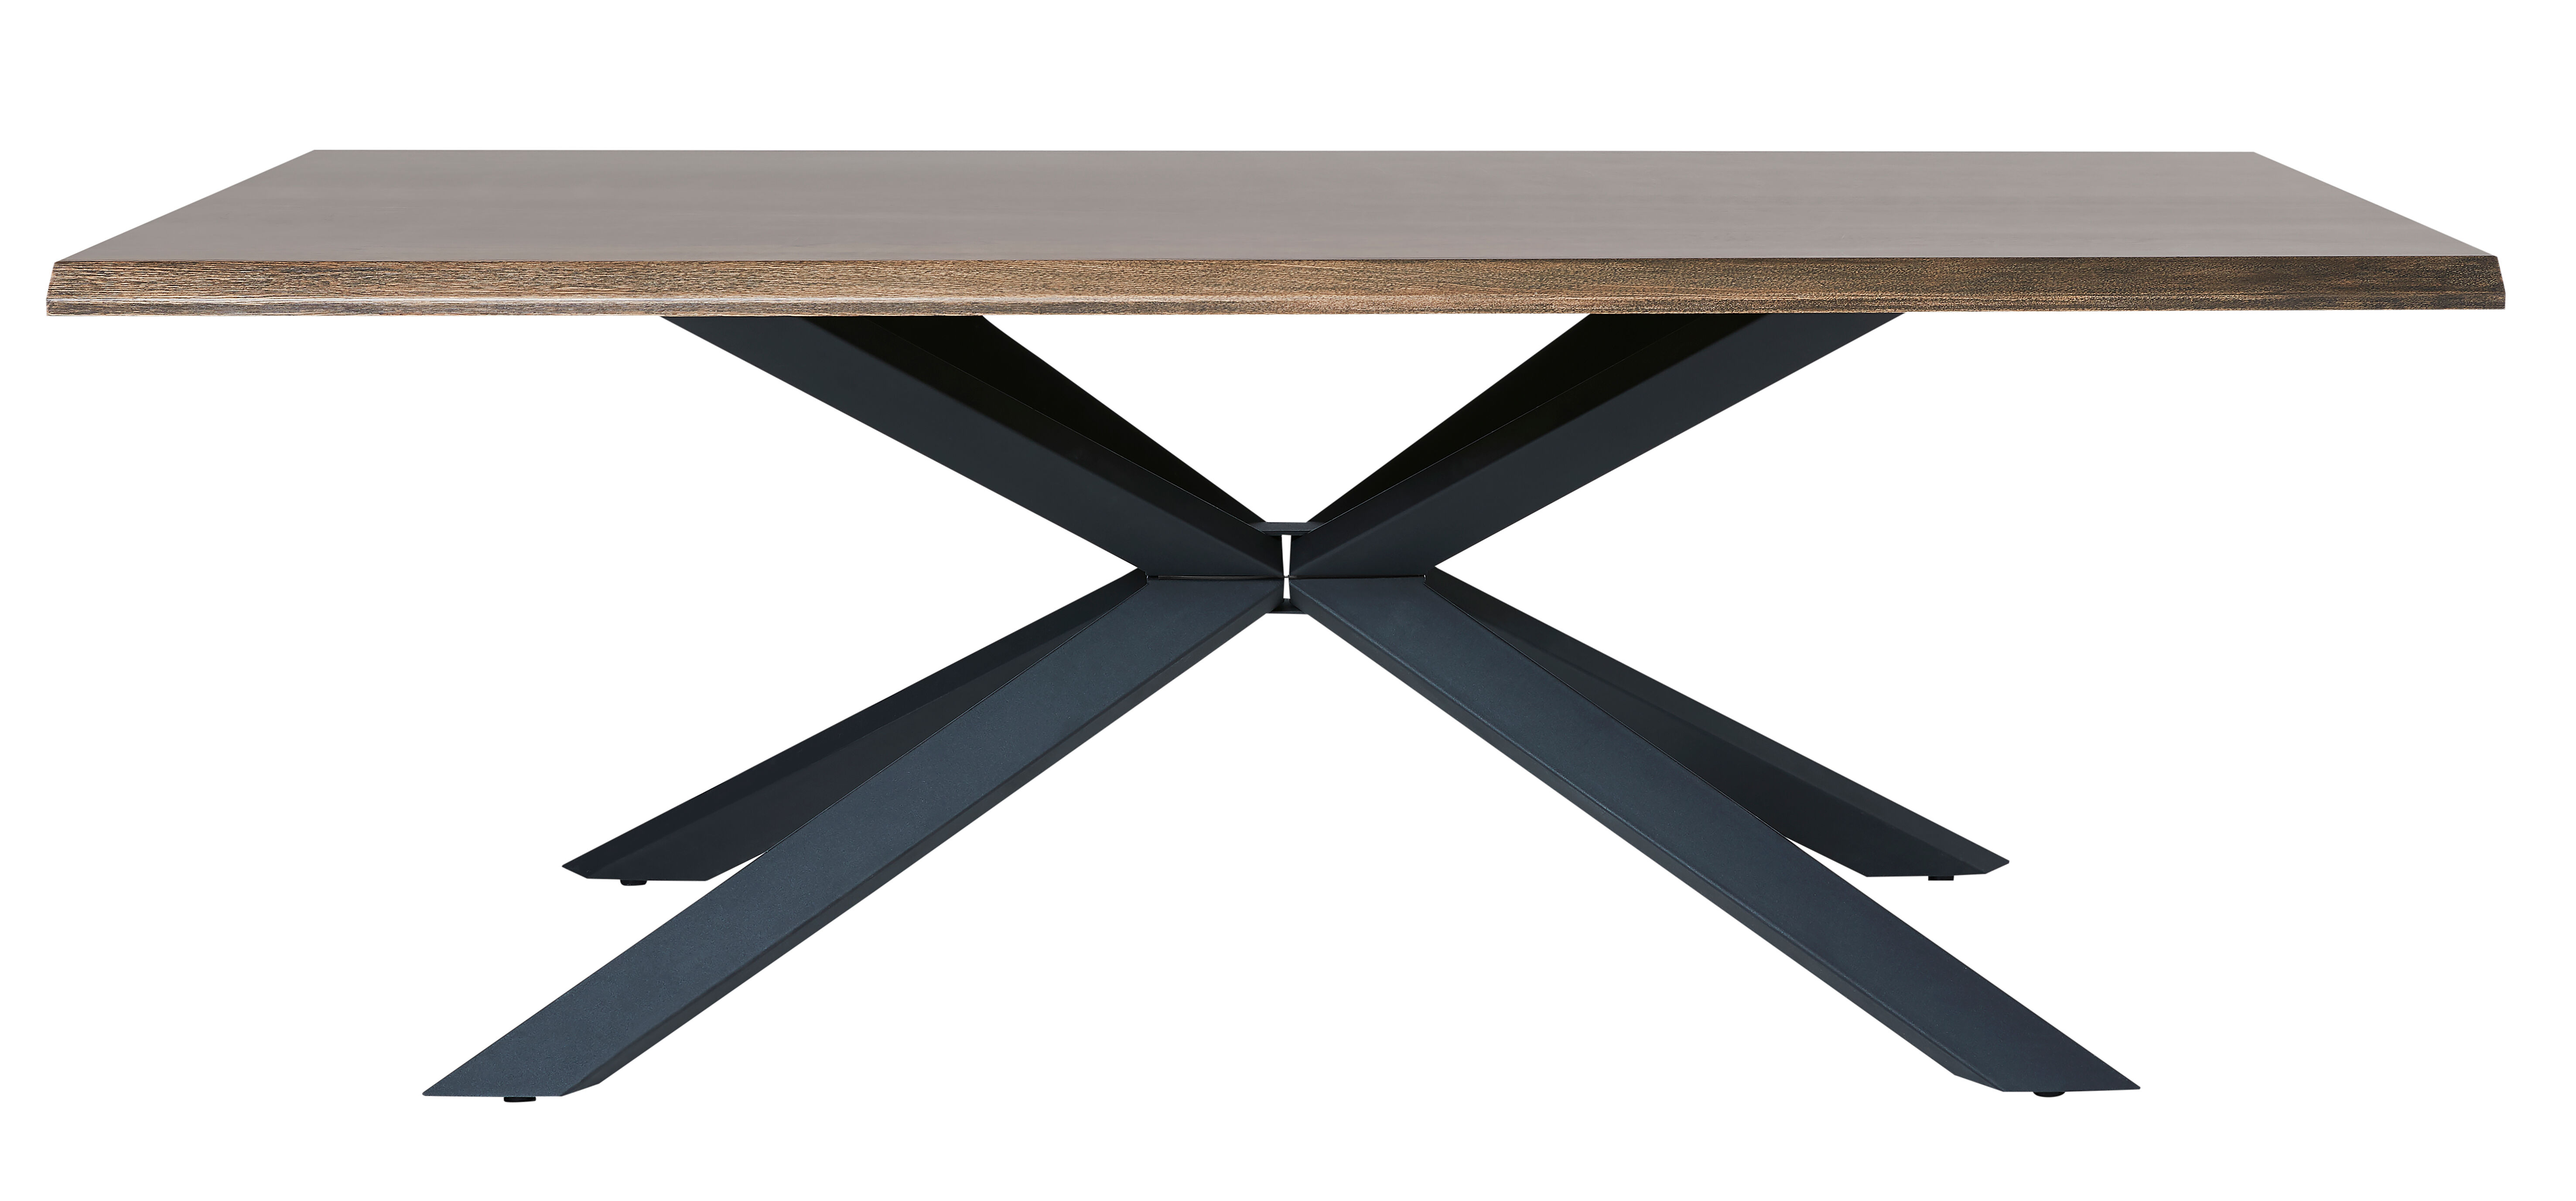 Arne spisebord 100x200 cm, eik finer og lakk.